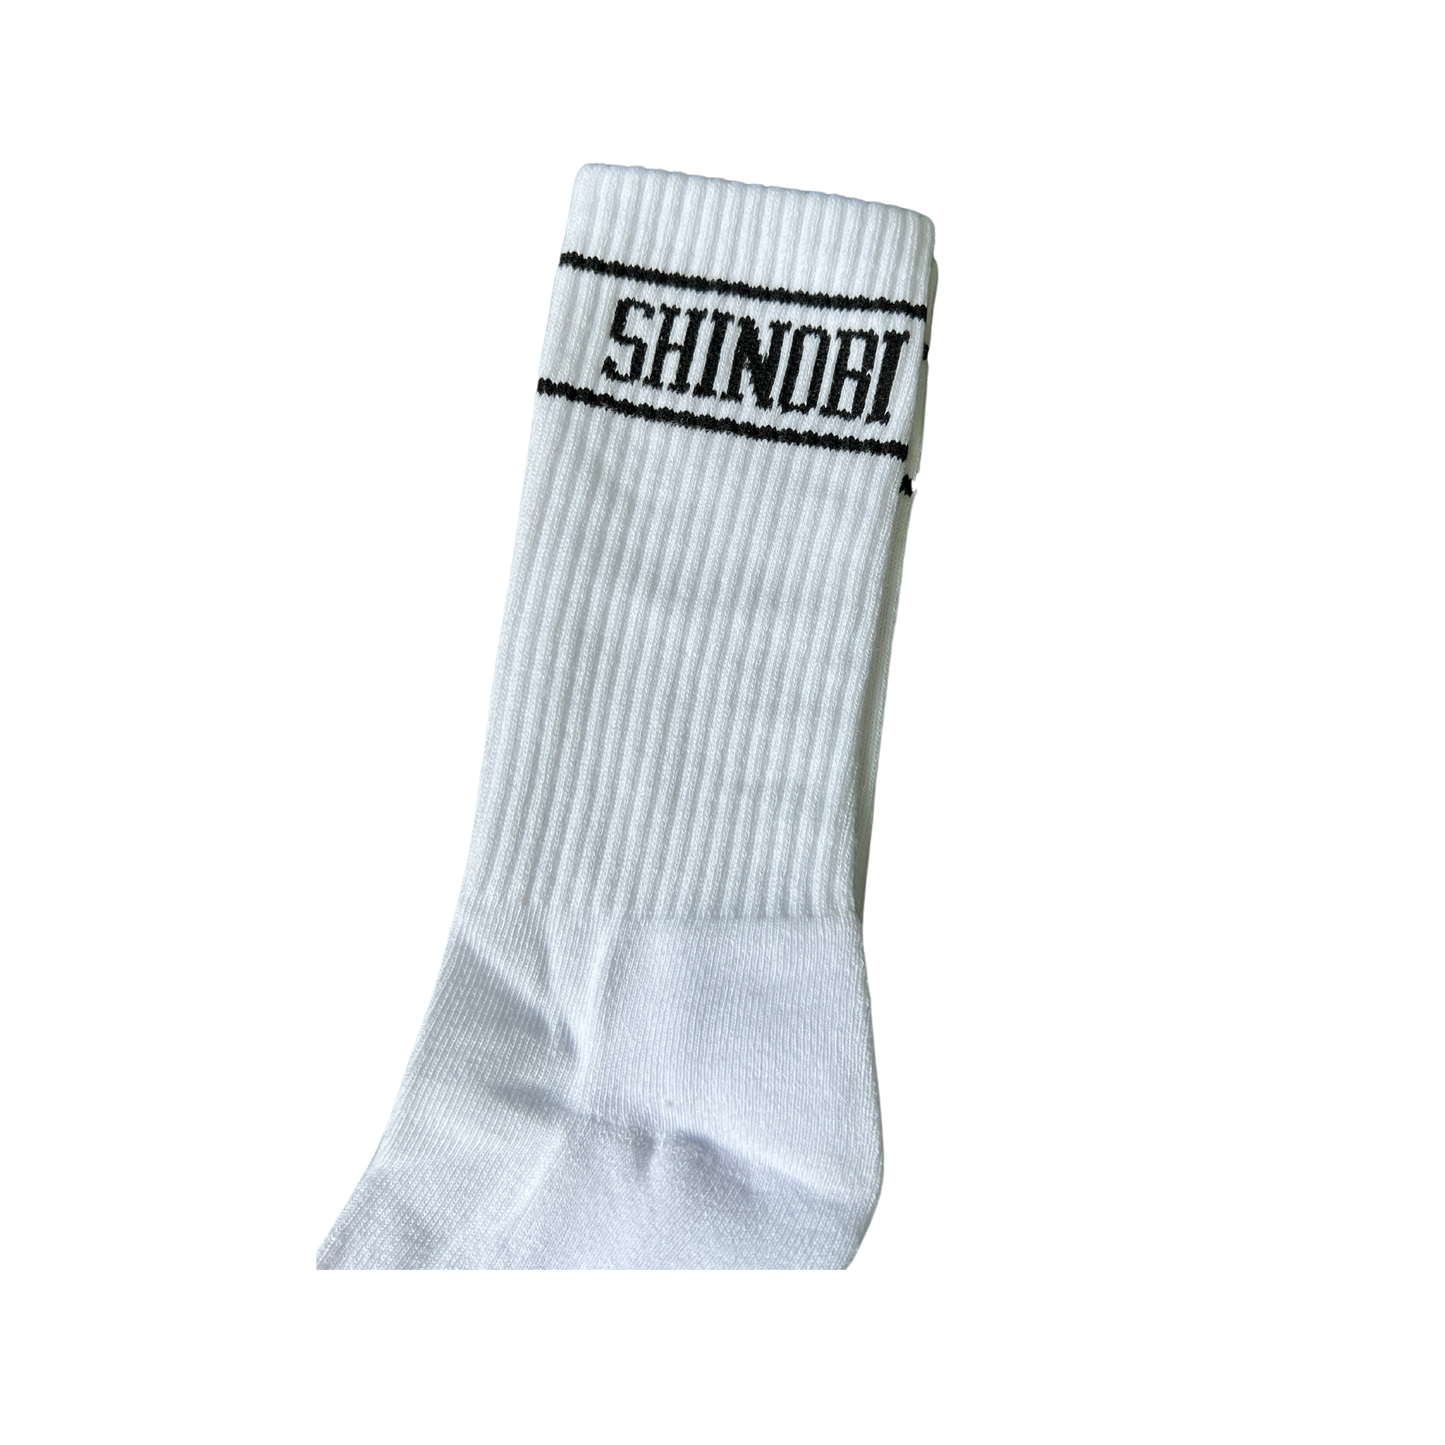 Shinobi Spellout Sock